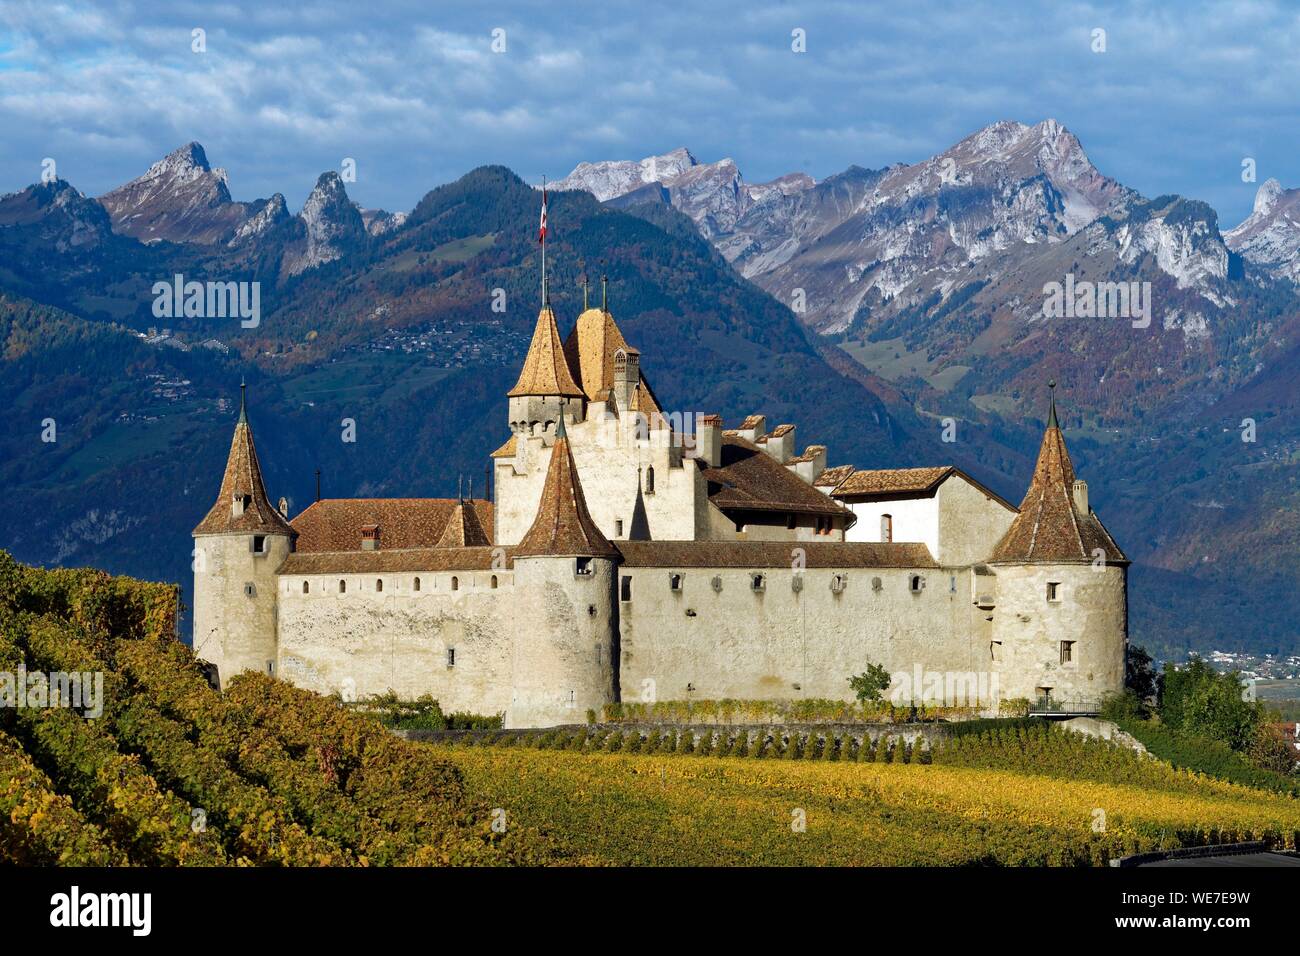 Schweiz, Kanton Waadt, Aigle, das Schloss von Weinbergen umgeben Stockfoto